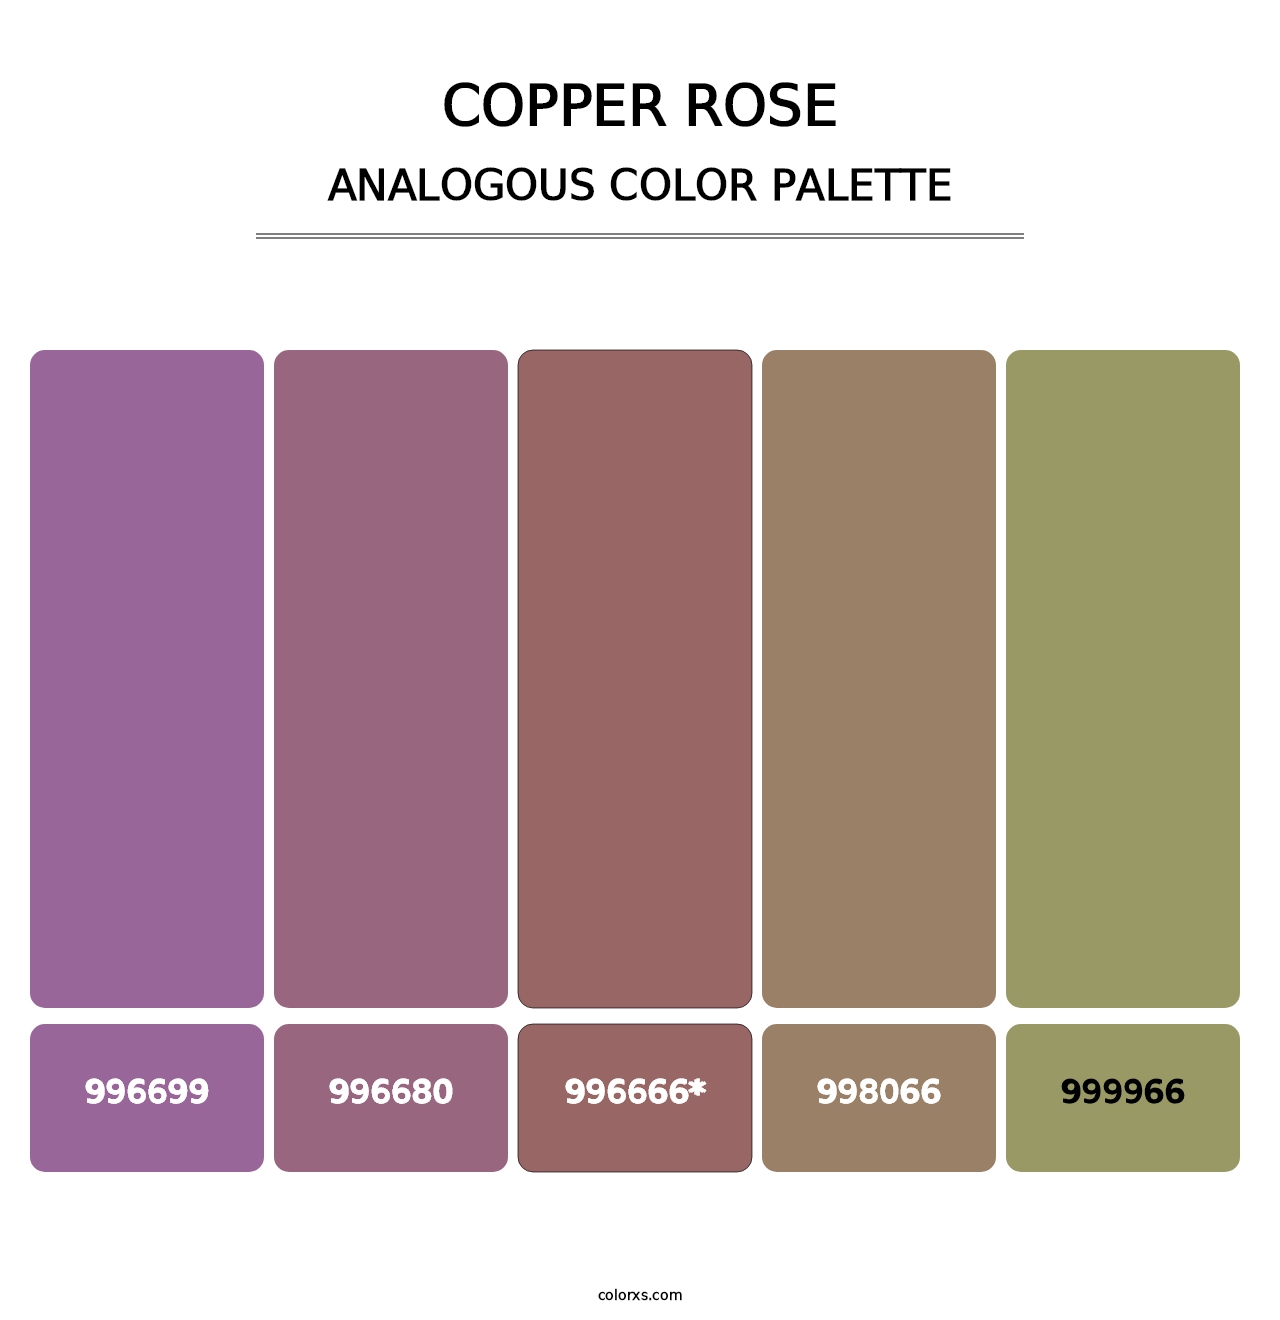 Copper rose - Analogous Color Palette